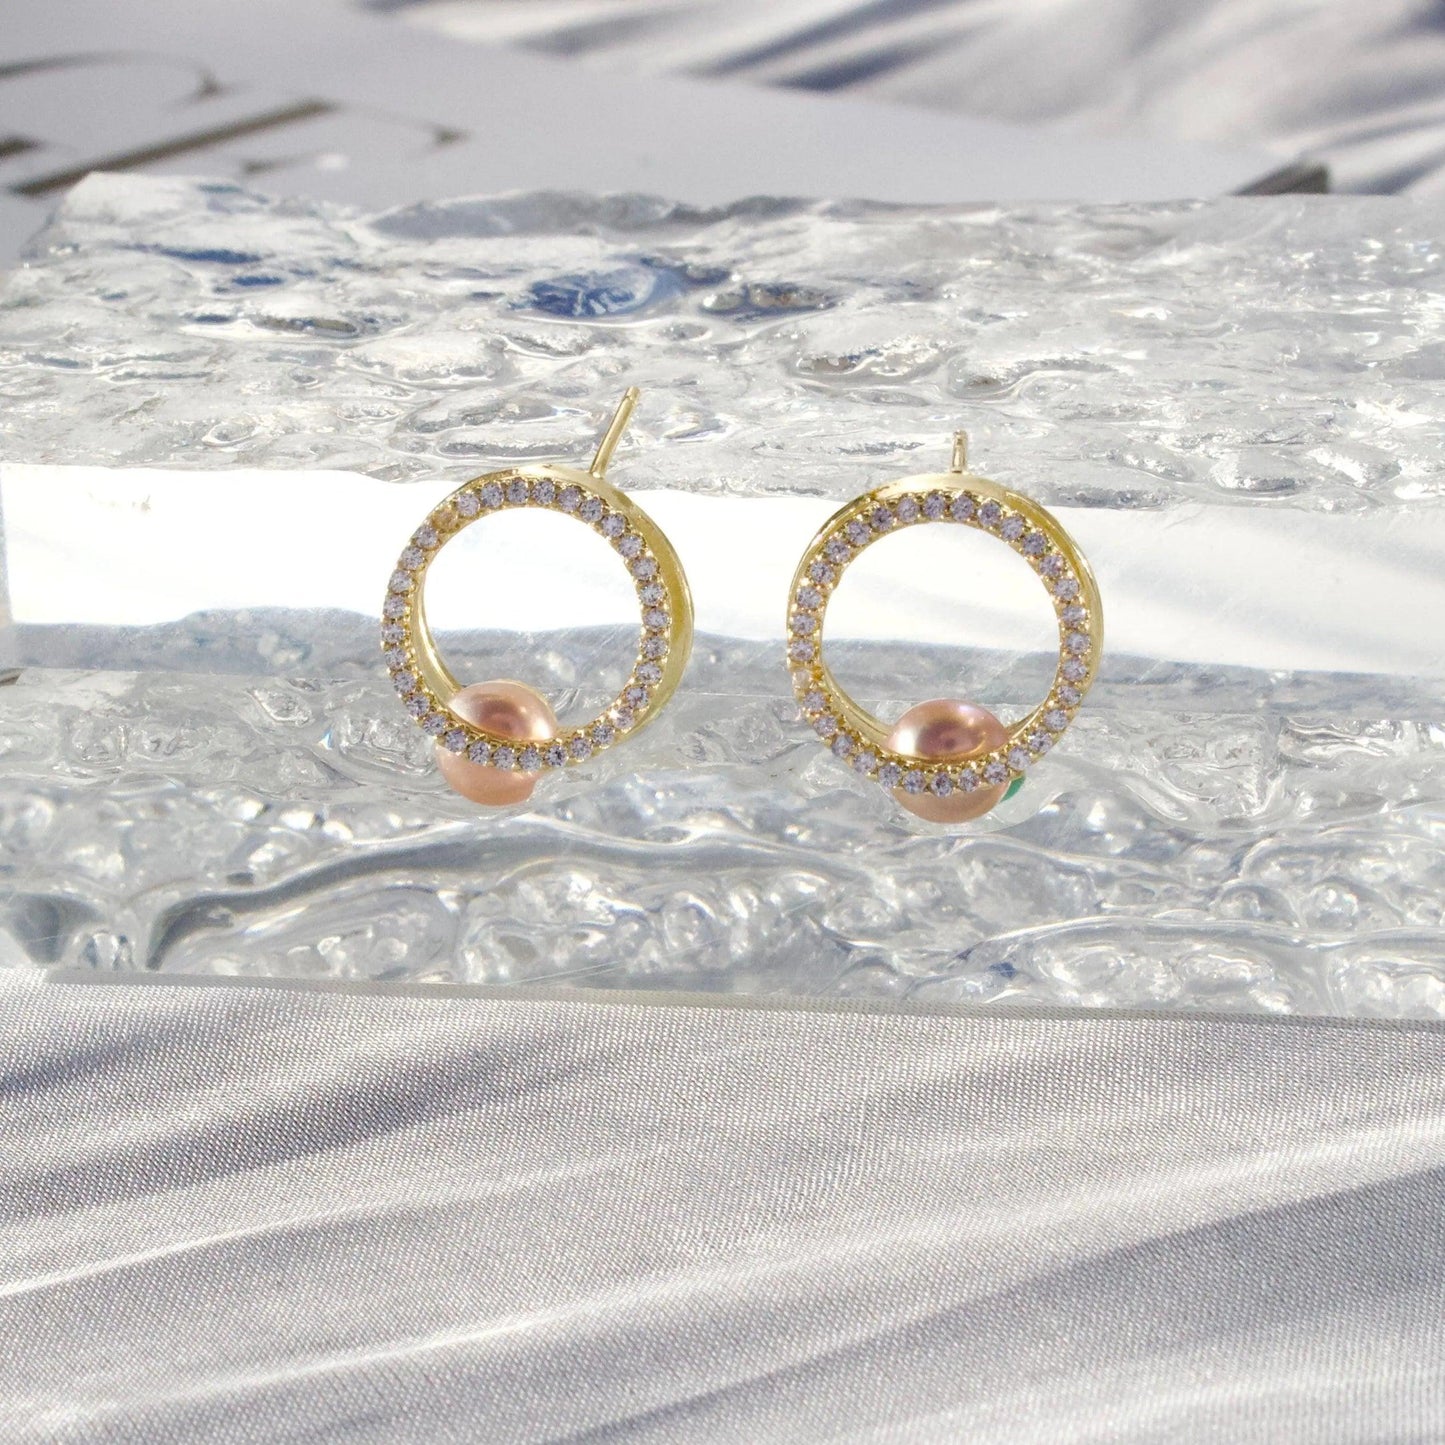 Rosa & weisse｜Zirkonia goldene Ring mit Perlen Schmuck Online ¦ JK Jewelry & Accessories